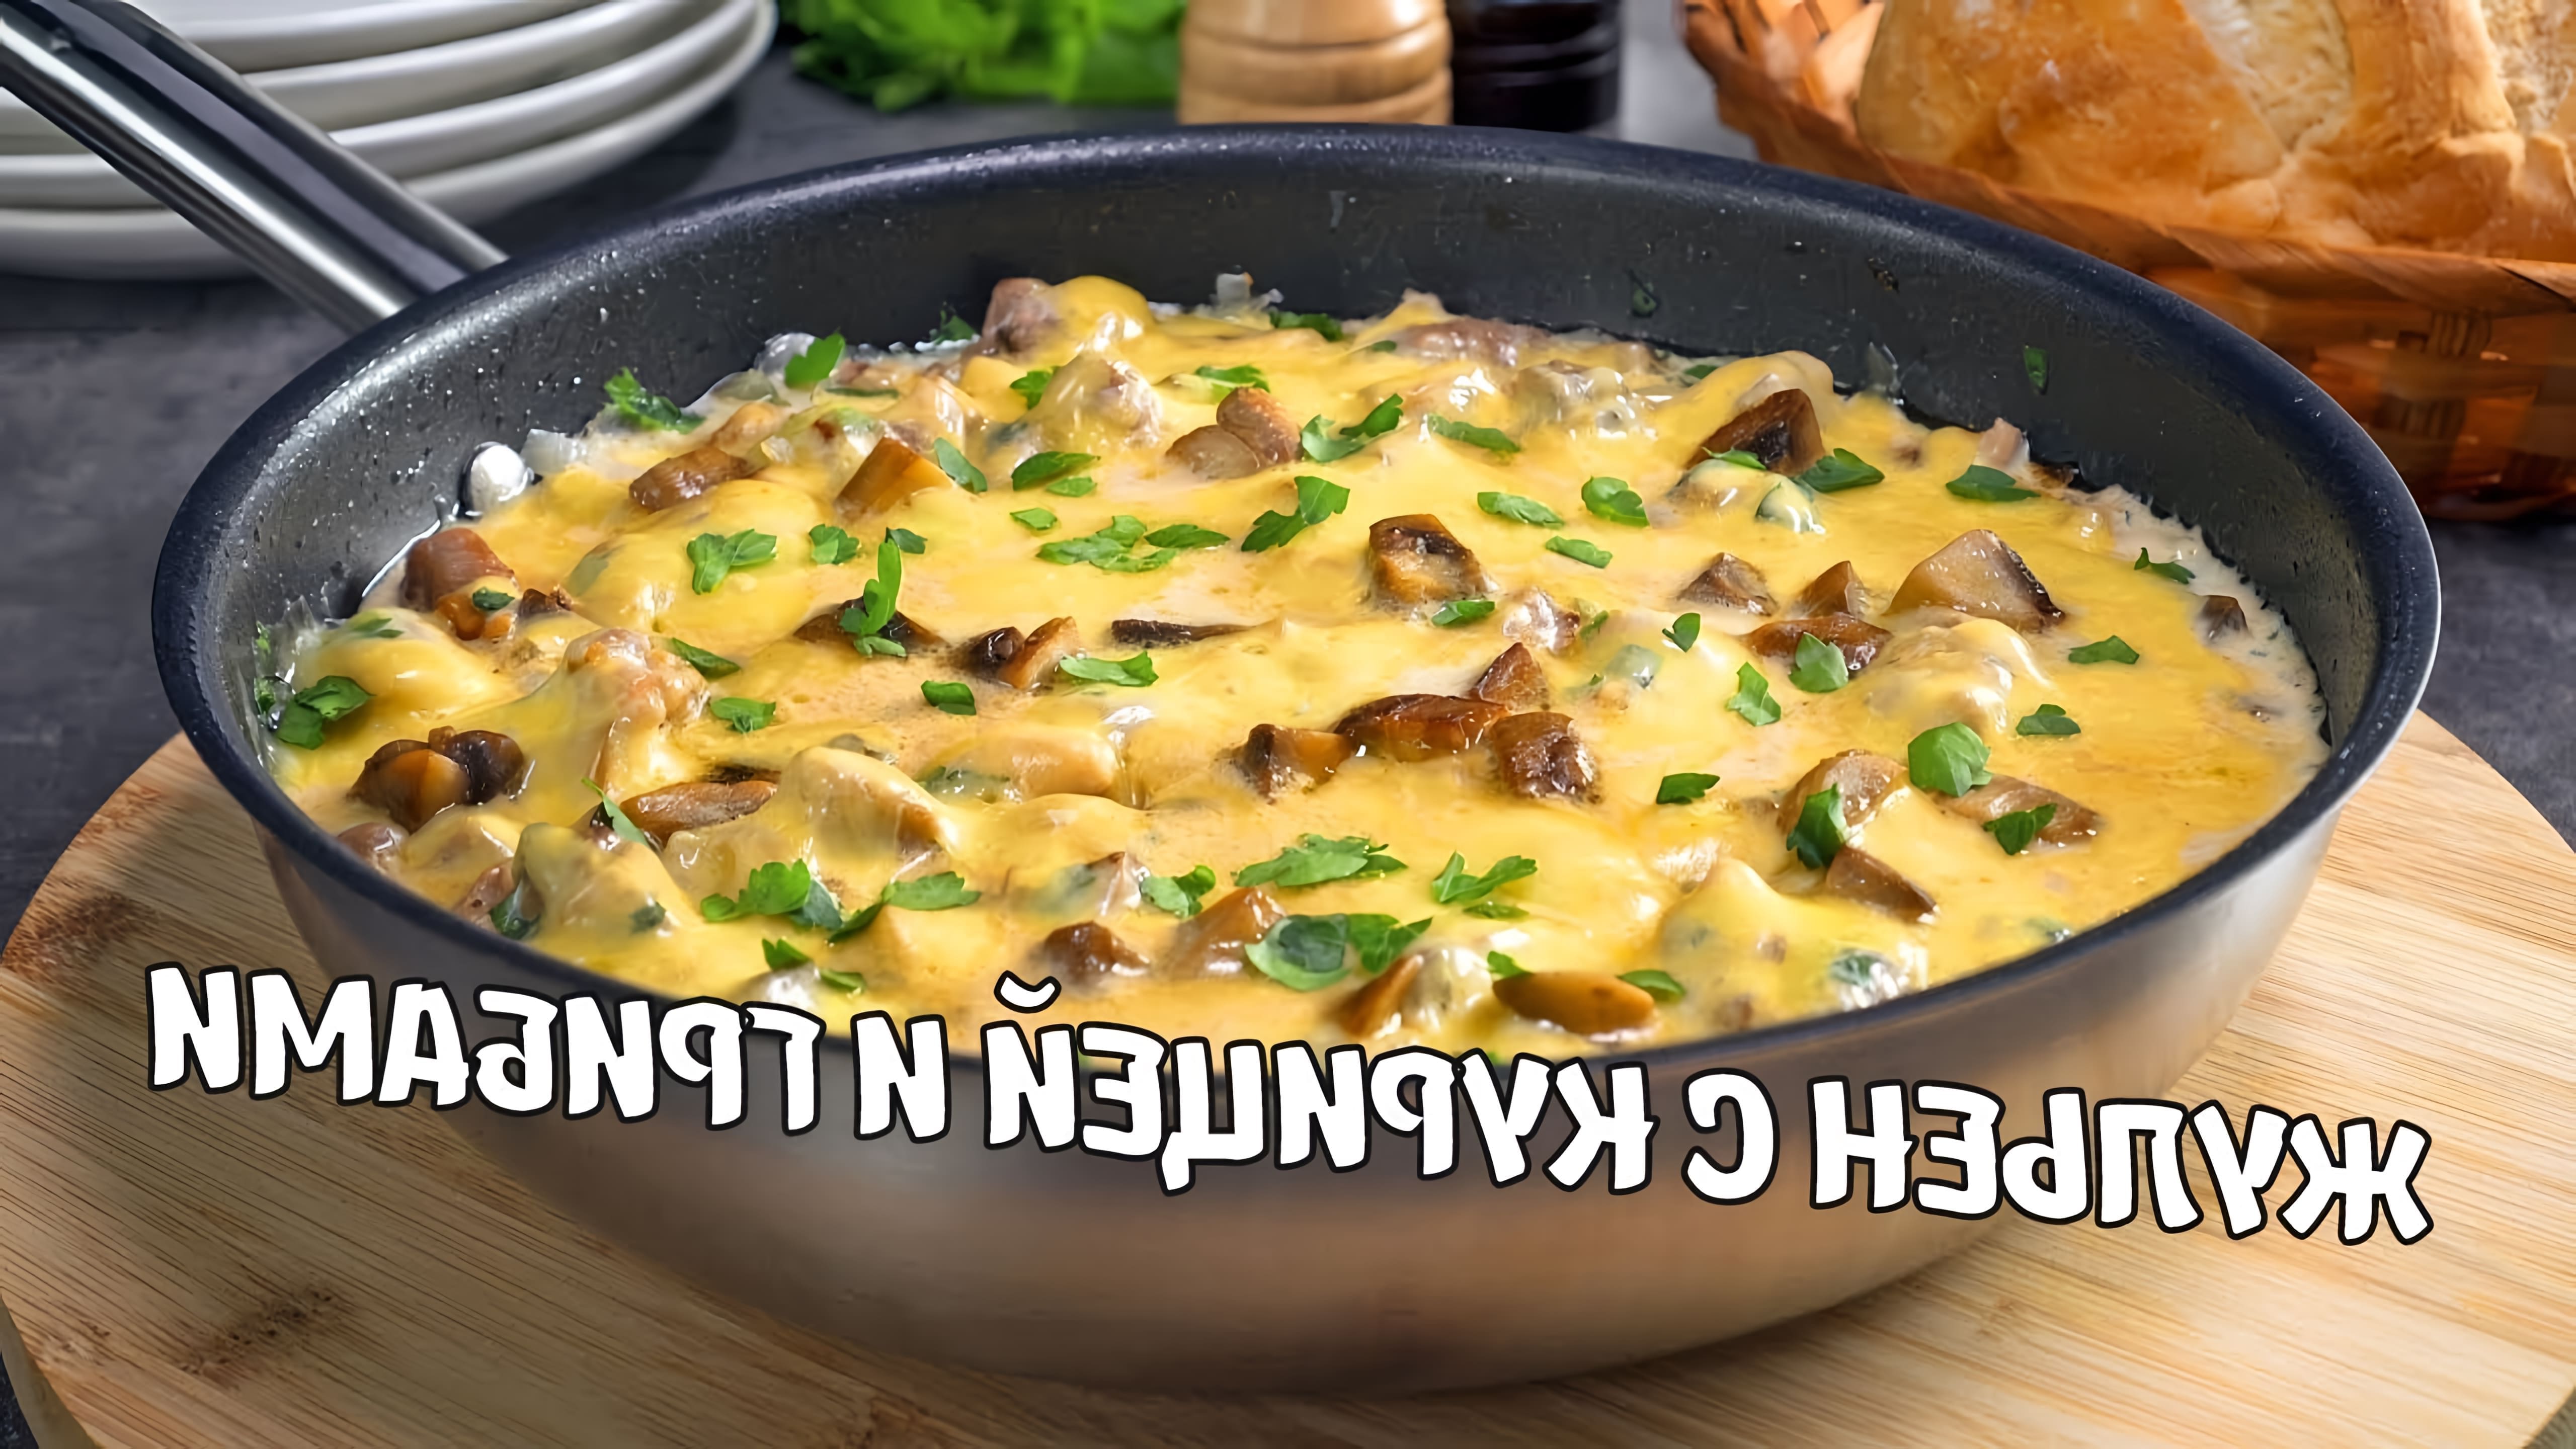 В этом видео демонстрируется рецепт приготовления быстрого и вкусного жульена с курицей и грибами на сковороде